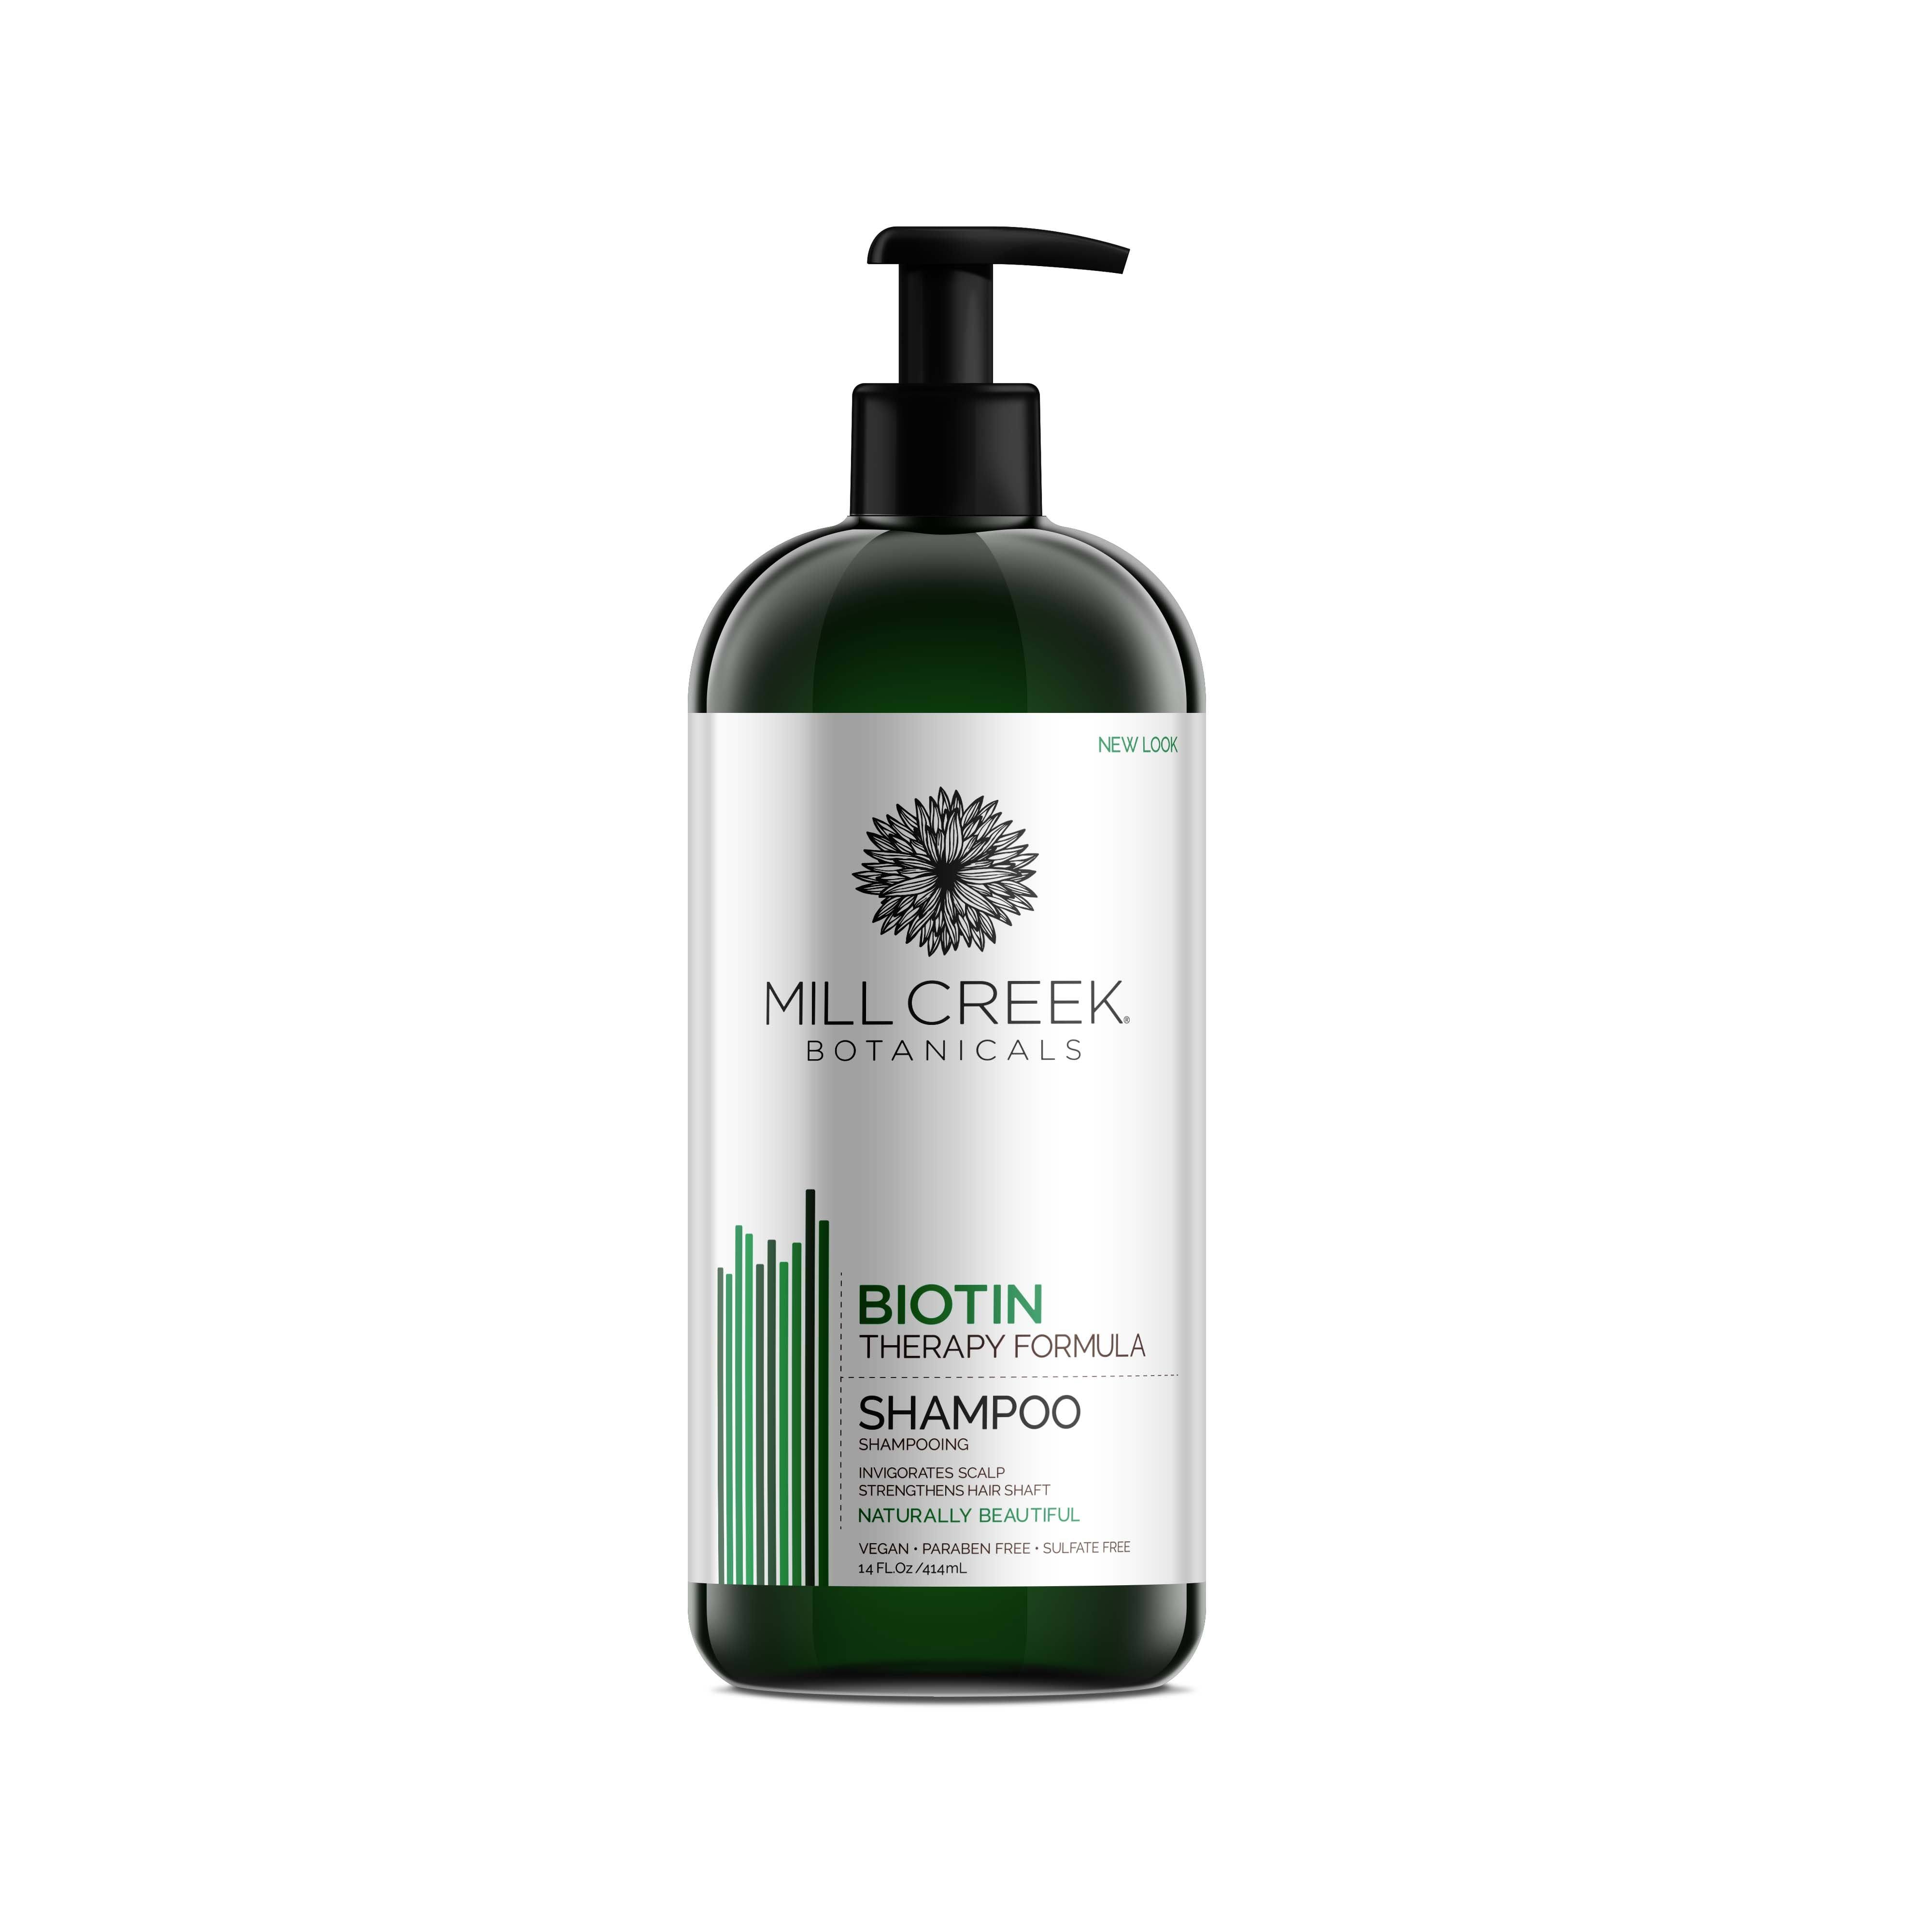 Mill Creek Botanicals - Biotin Shampoo - 14 fl. oz (414 ml)